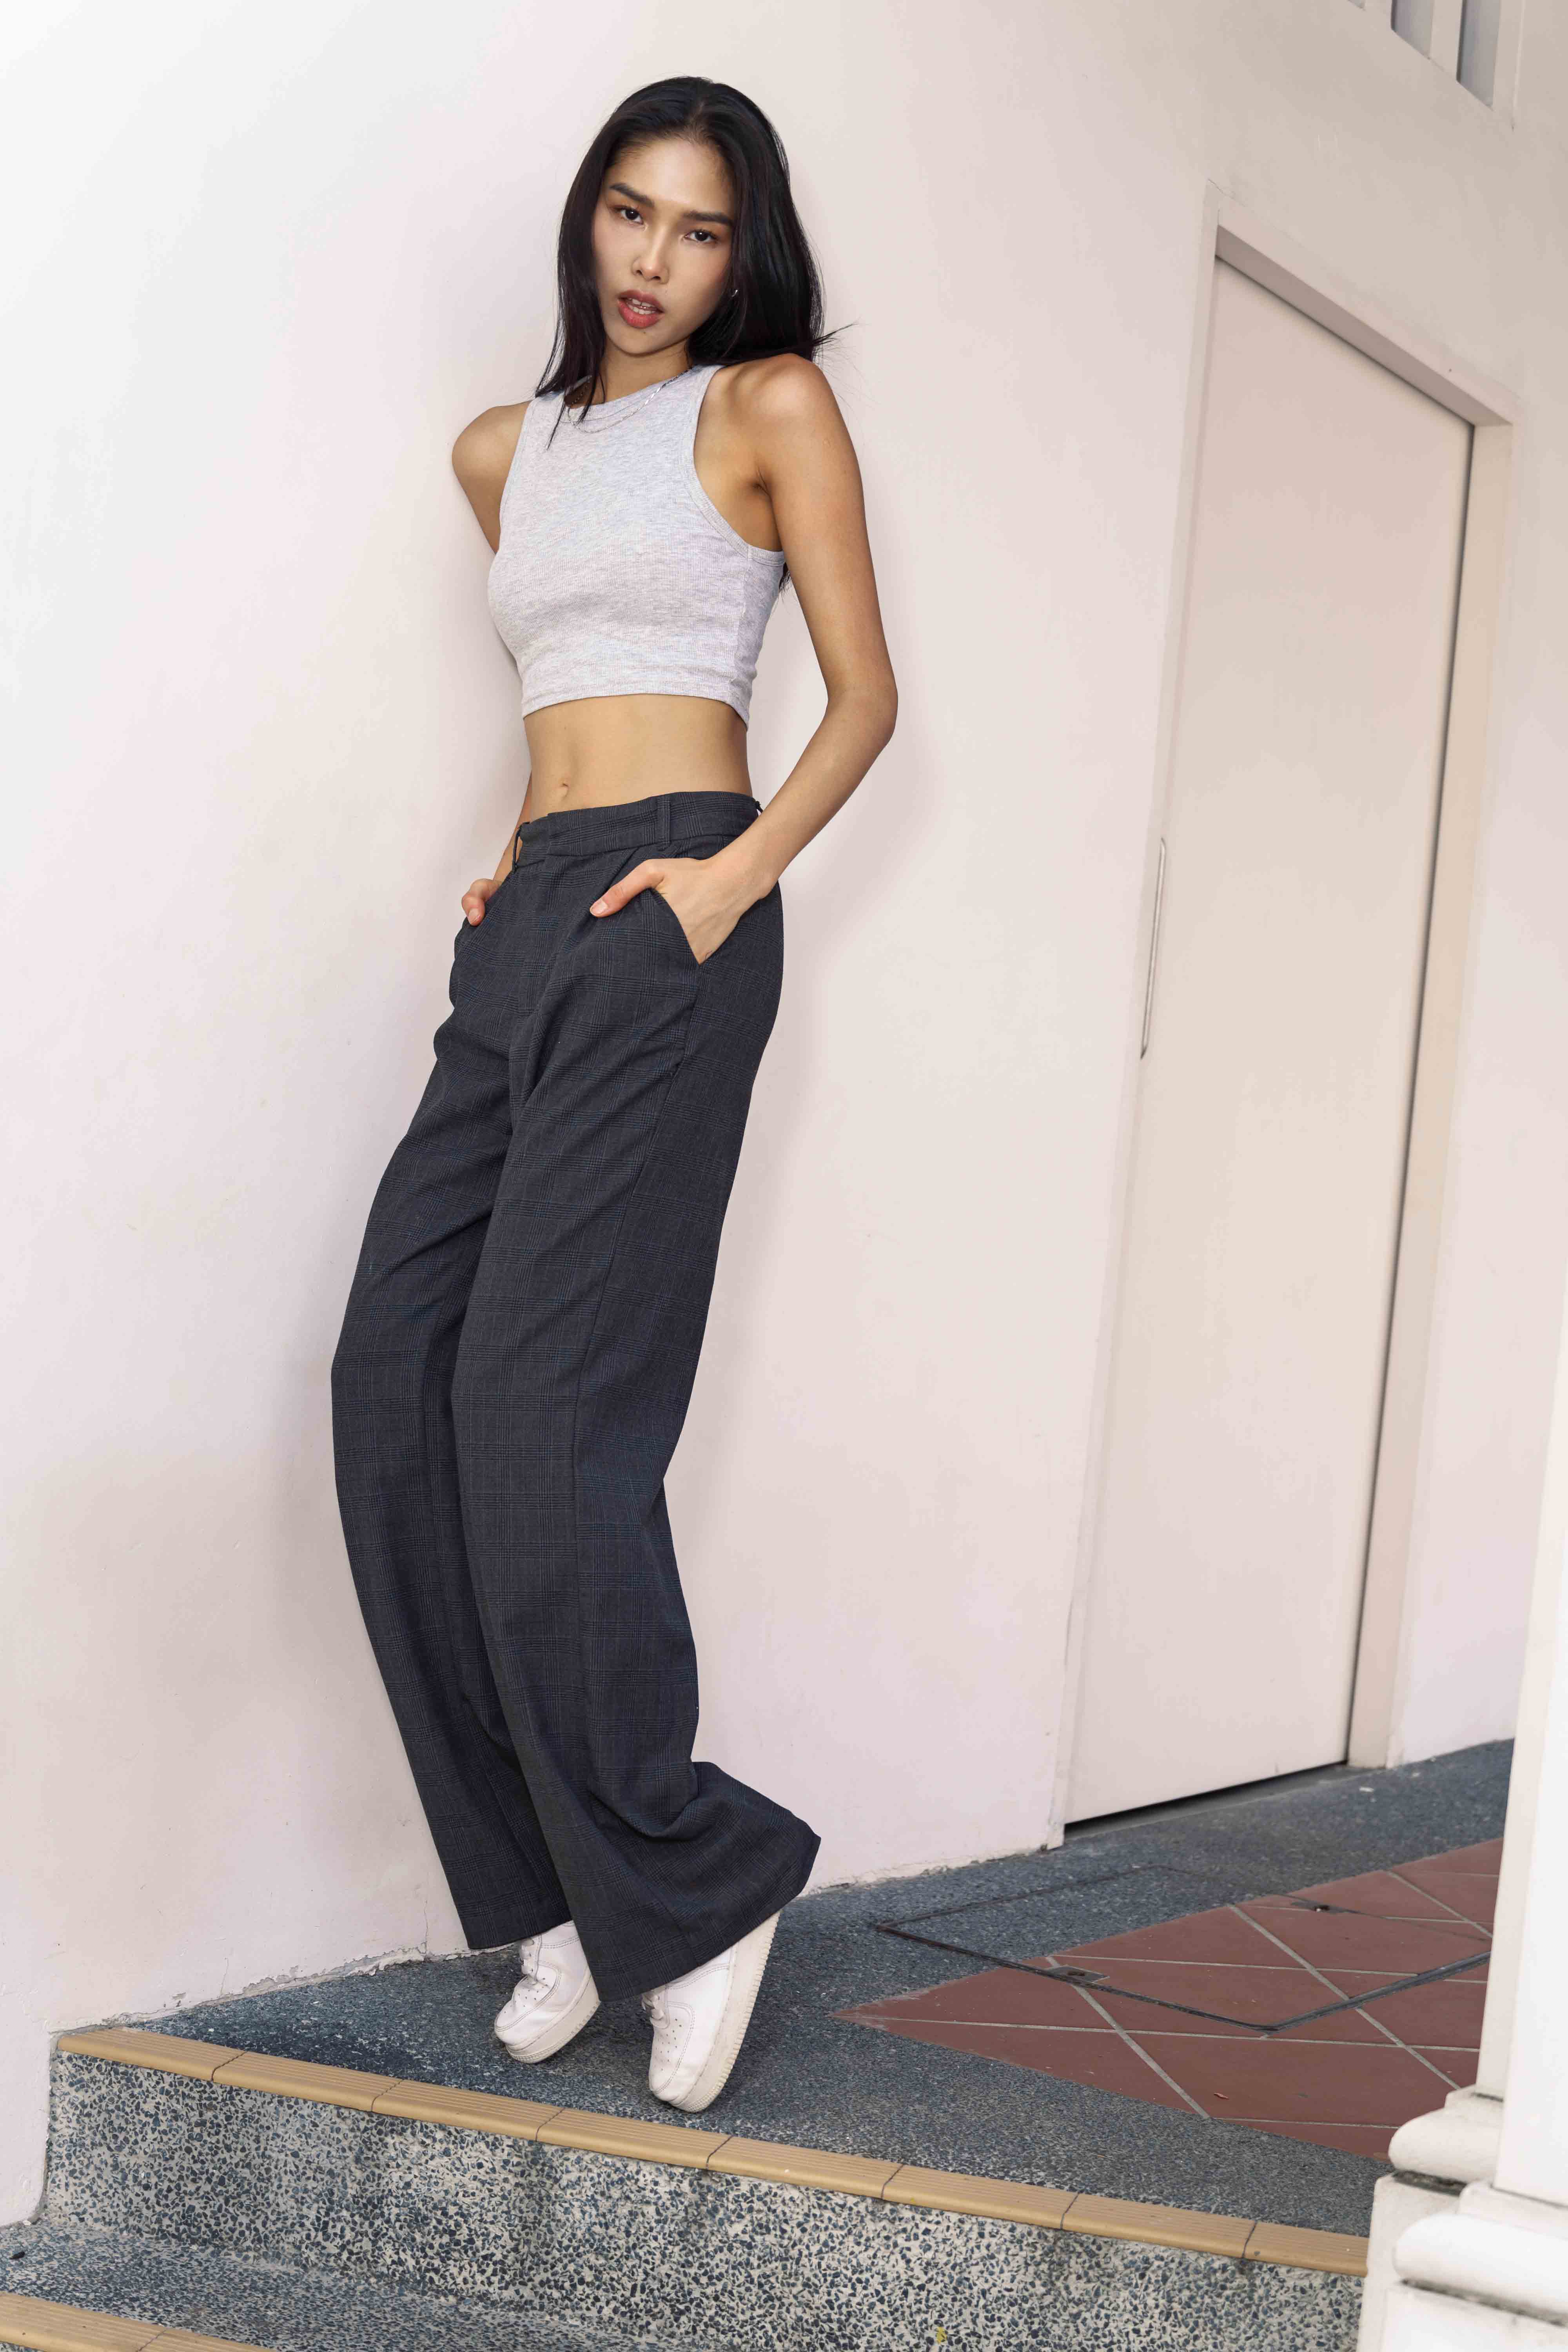 Rosemary Ling - Female Model | Basic Models: Singapore Modelling Agency